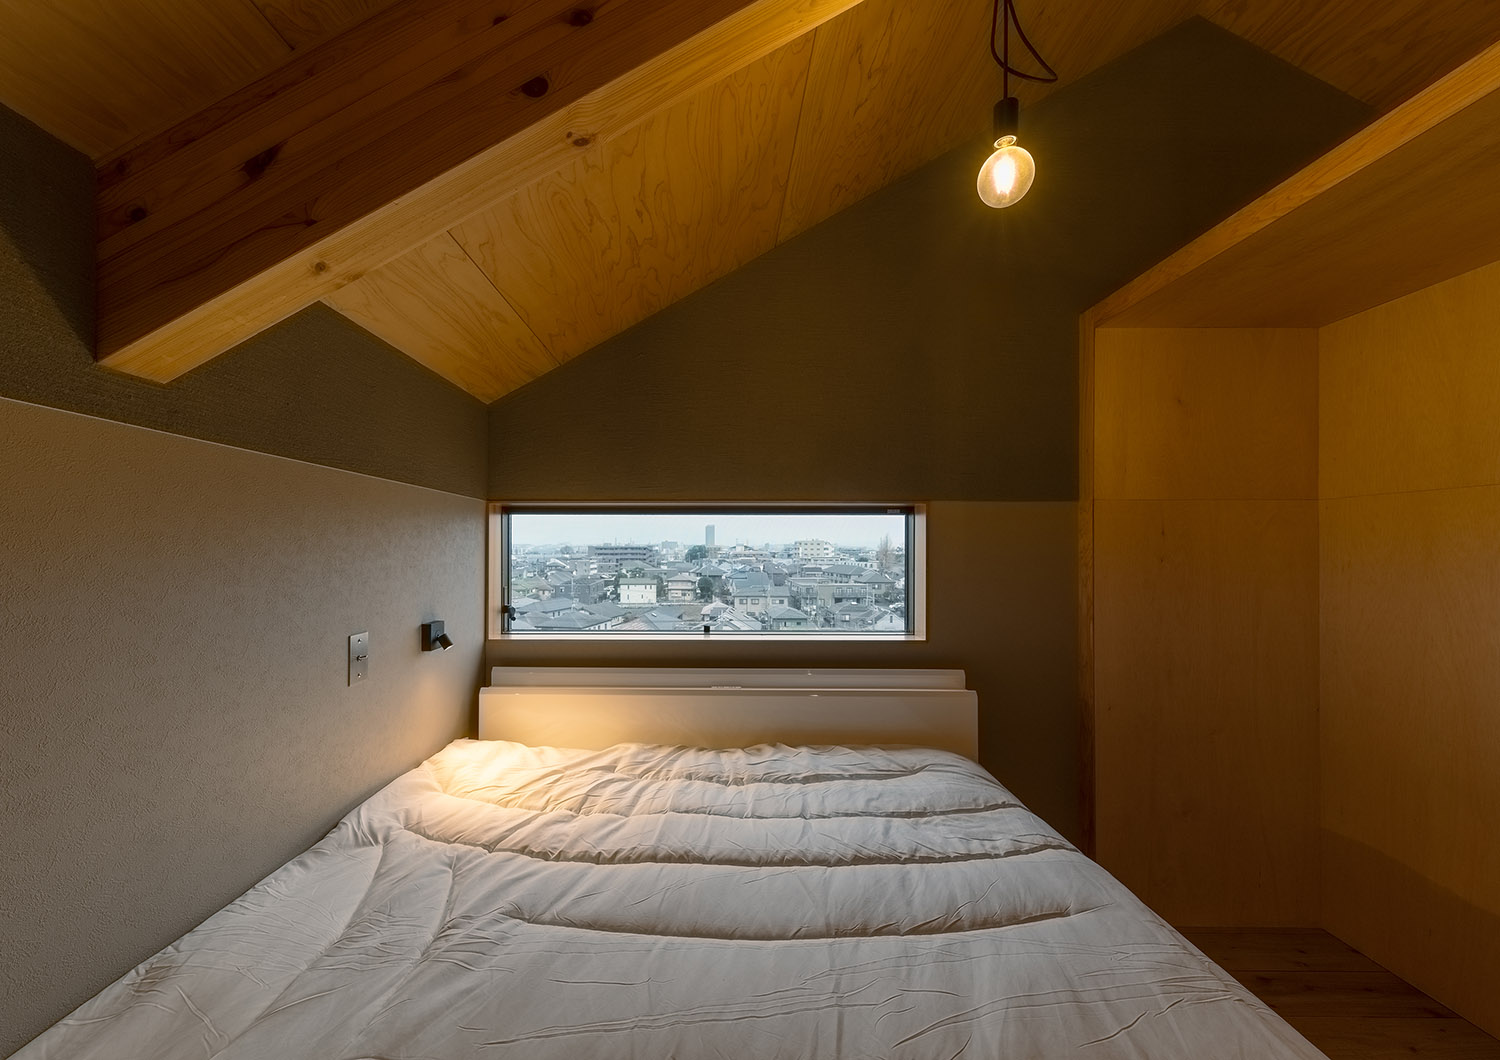 スリット窓がある、ペンダントライトを取り付けた寝室・デザイン住宅